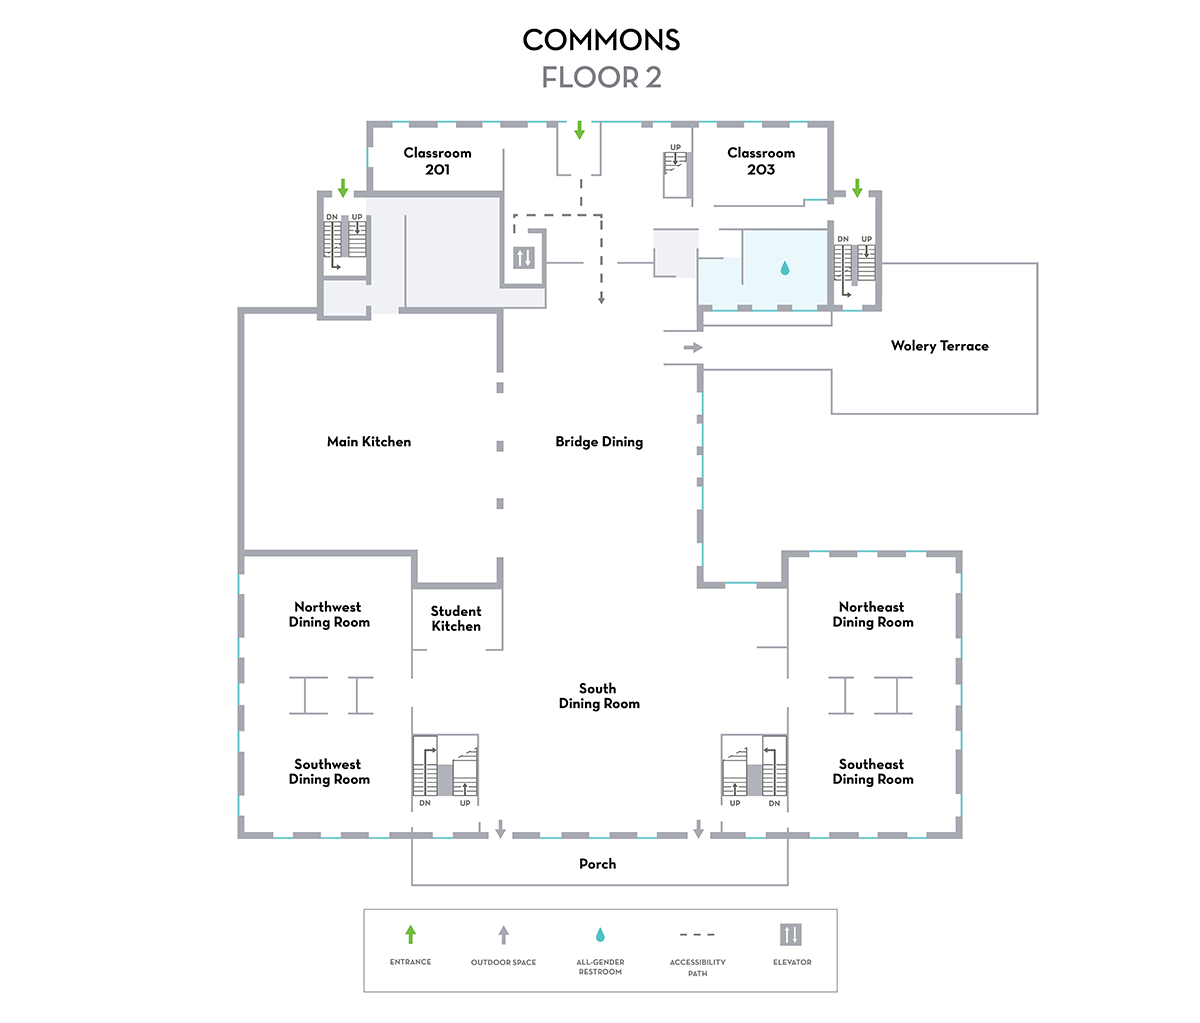 Commons Map Floor 2